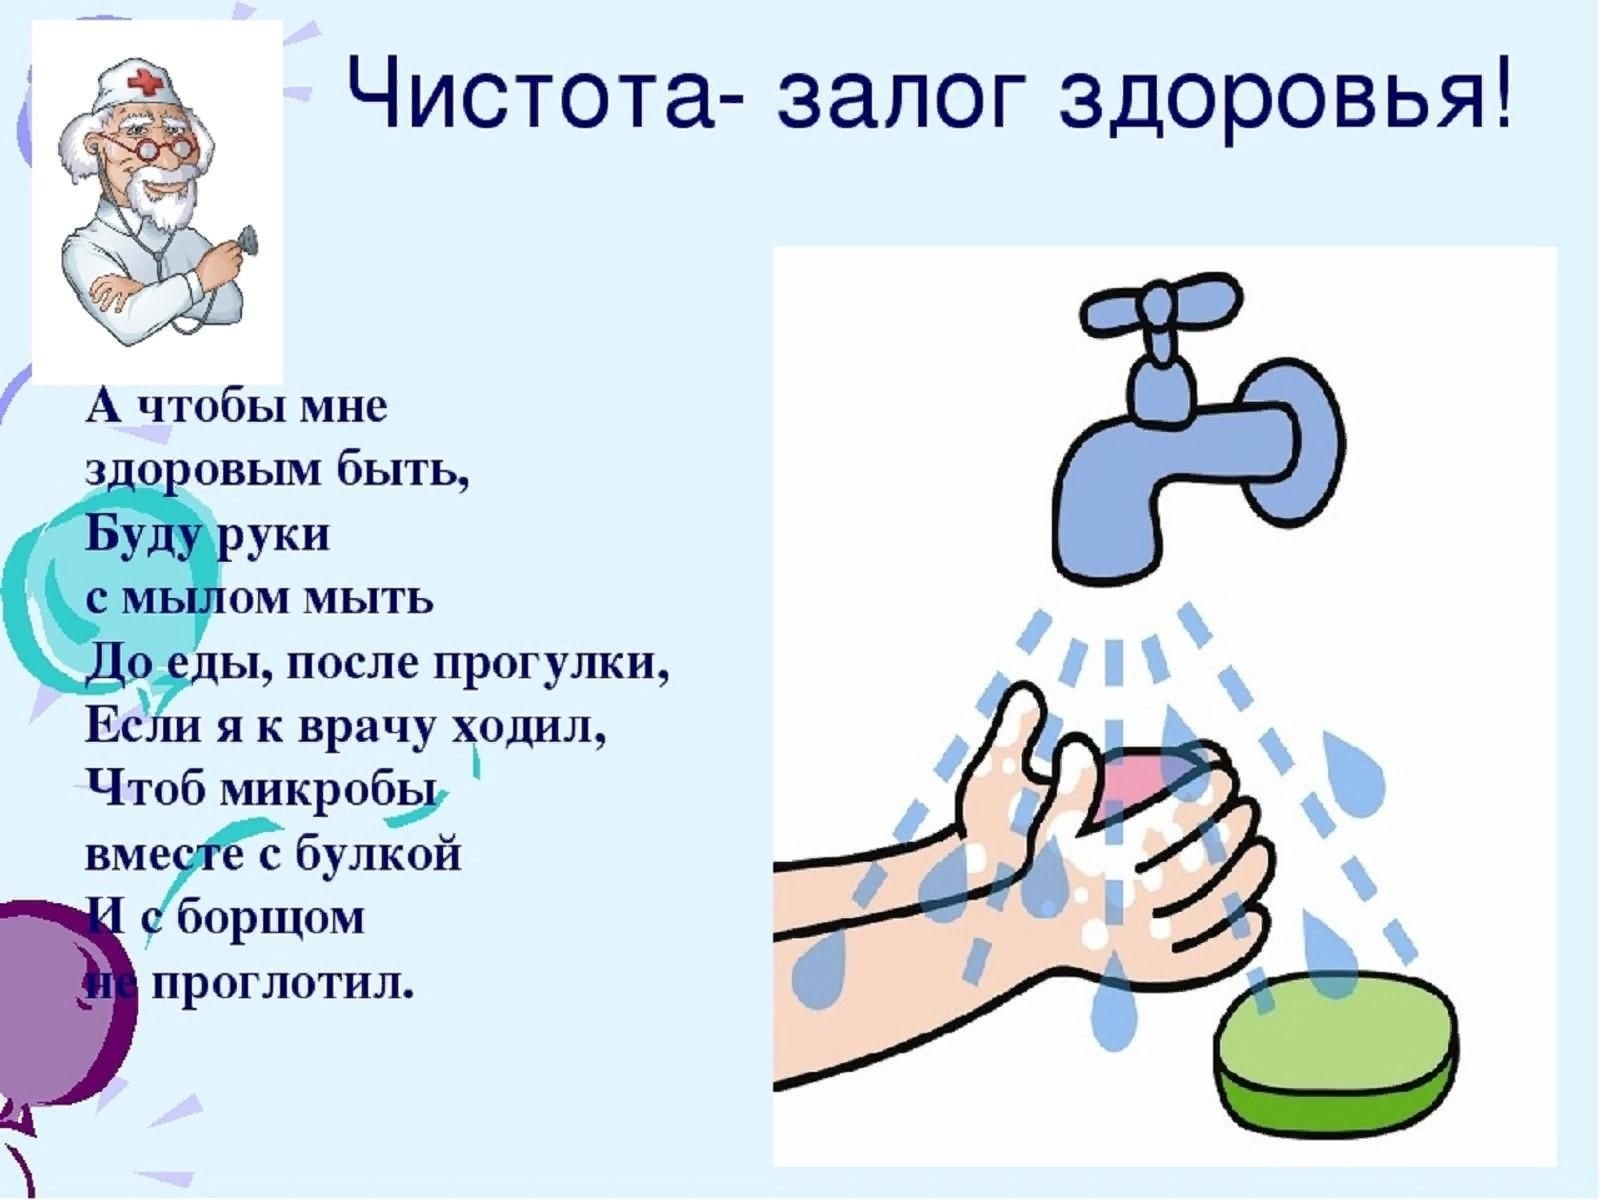 3 мытье рук. Чистота залог здоровья. Чистые руки залог здоровья. Чистота залог здоровья для дошкольников. Гигиена для детей.